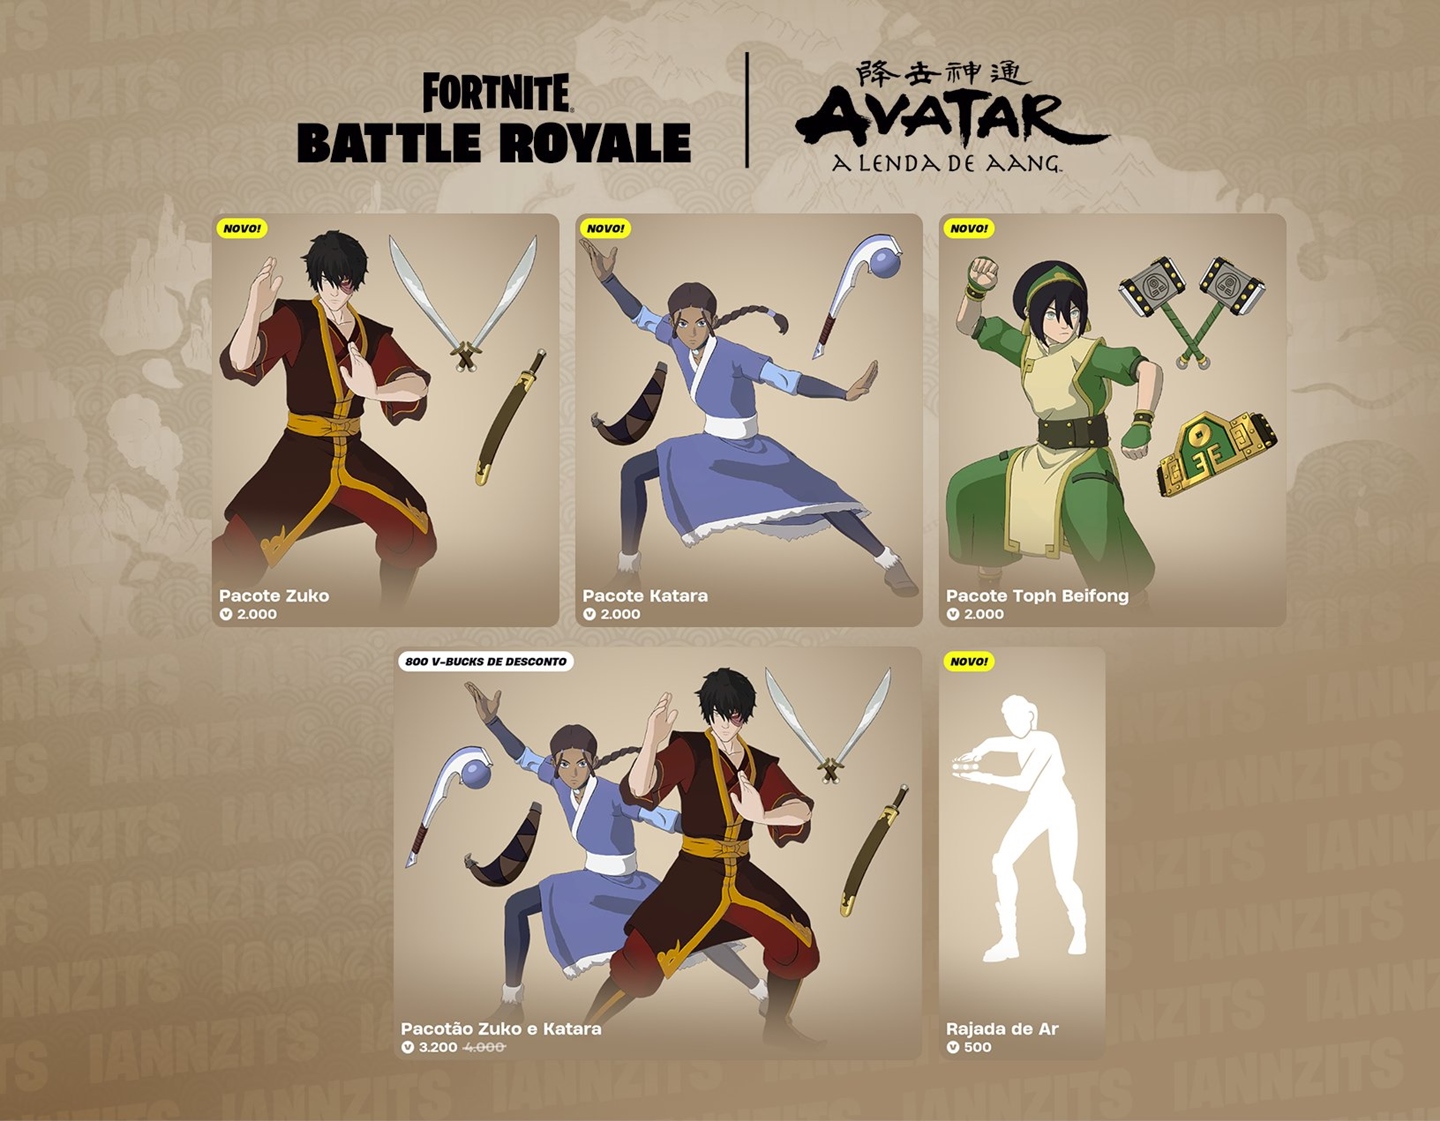 Skins temáticas de Avatar: A Lenda de Aang já estão disponíveis na loja de Fortnite.